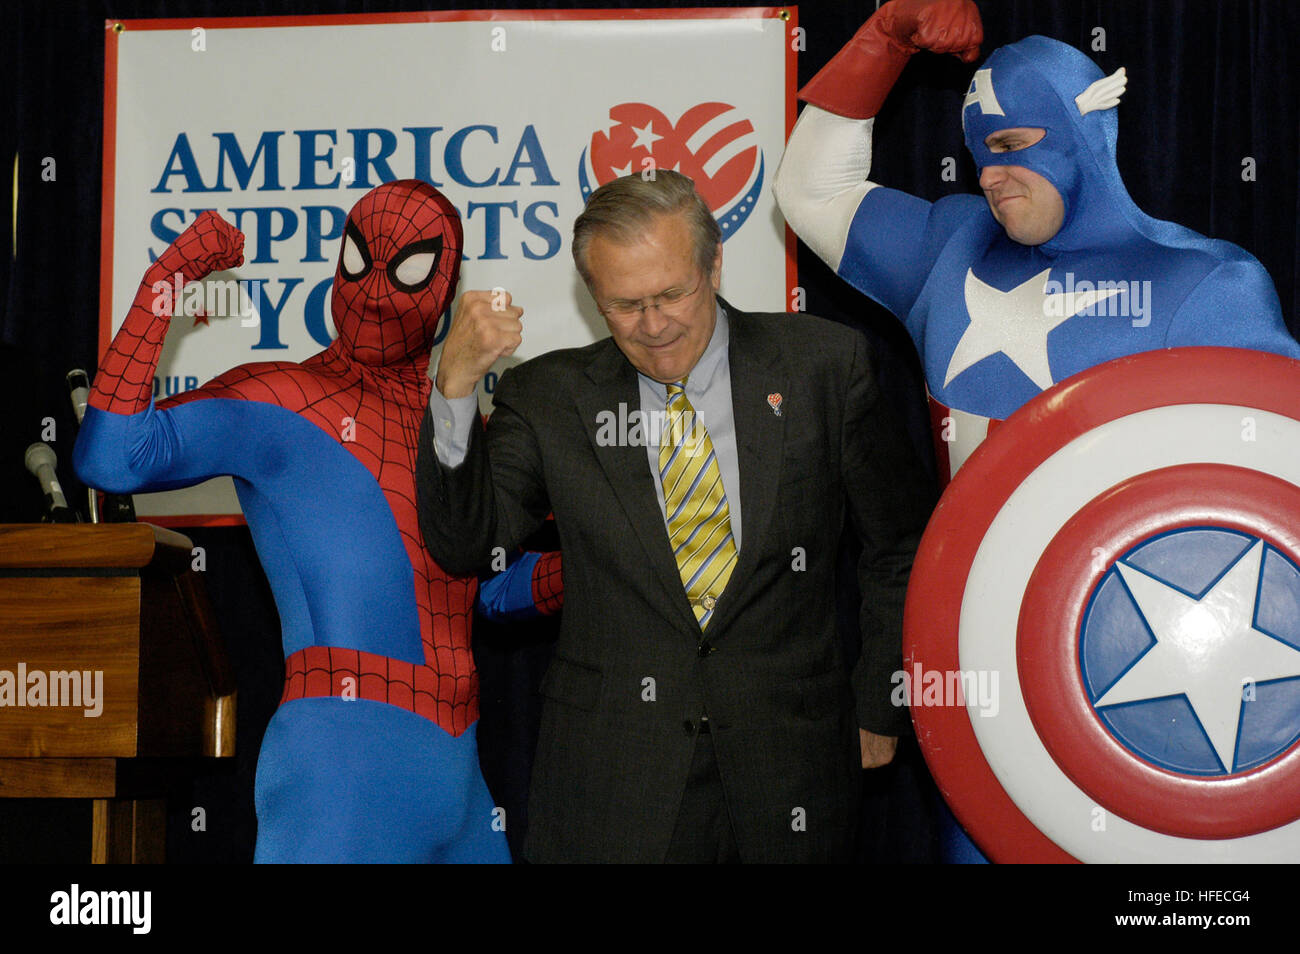 050428-N-0295M-004 Pentagone, Washington, D.C. (28 avril 2005) - Le ministre de la Défense Donald Rumsfeld fléchit ses muscles avec super-héros Spider-Man et Captain America Spider-Man lors de l'inauguration d'une bande dessinée qui sera distribué gratuitement aux forces américaines en Irak et dans le monde. Avec les vengeurs, Les Quatre Fantastiques, Spider-Man et d'autres héros Marvel, le comic book aura un tirage d'un million d'exemplaires et être distribué par le échanges militaires. La première 150 000 exemplaires seront distribués au personnel au Moyen-Orient. La bande dessinée est une partie de "l'Amérique latine prend en charge Banque D'Images